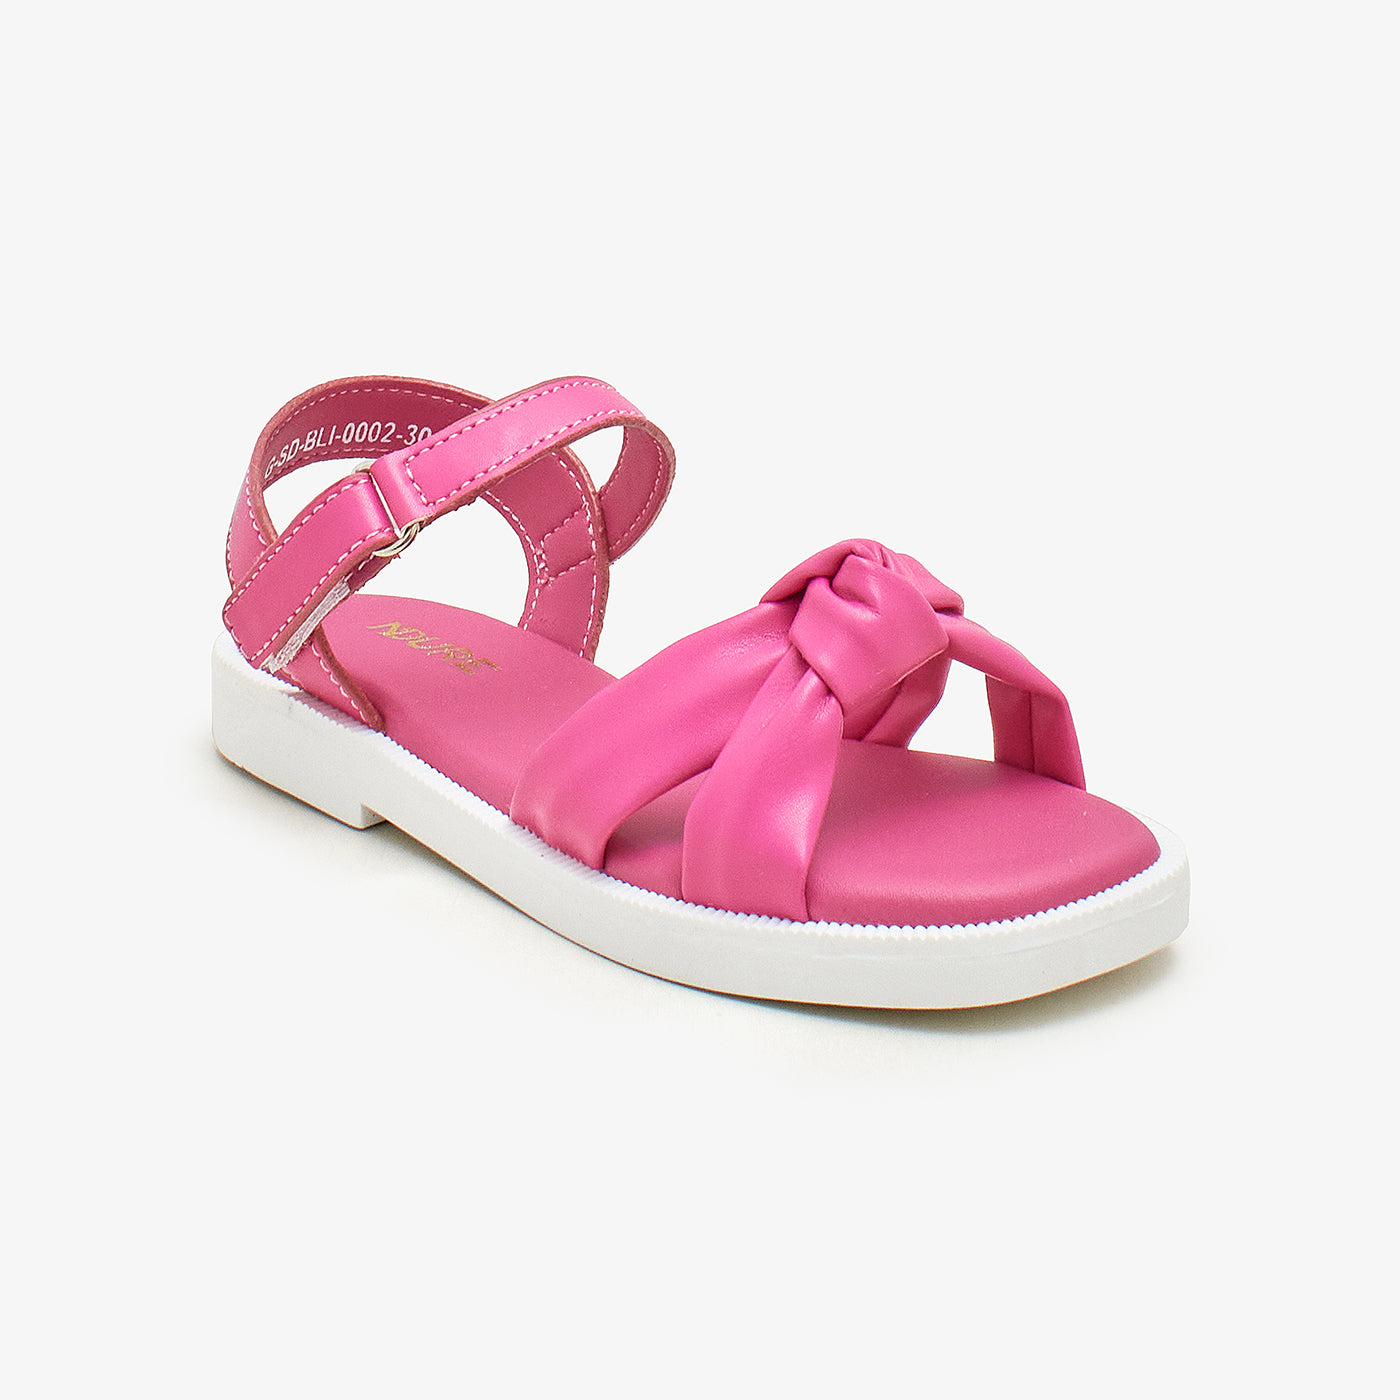 Buy Girls Sandals - Girl's Colorful Sandals - G-SD-BLI-0002 